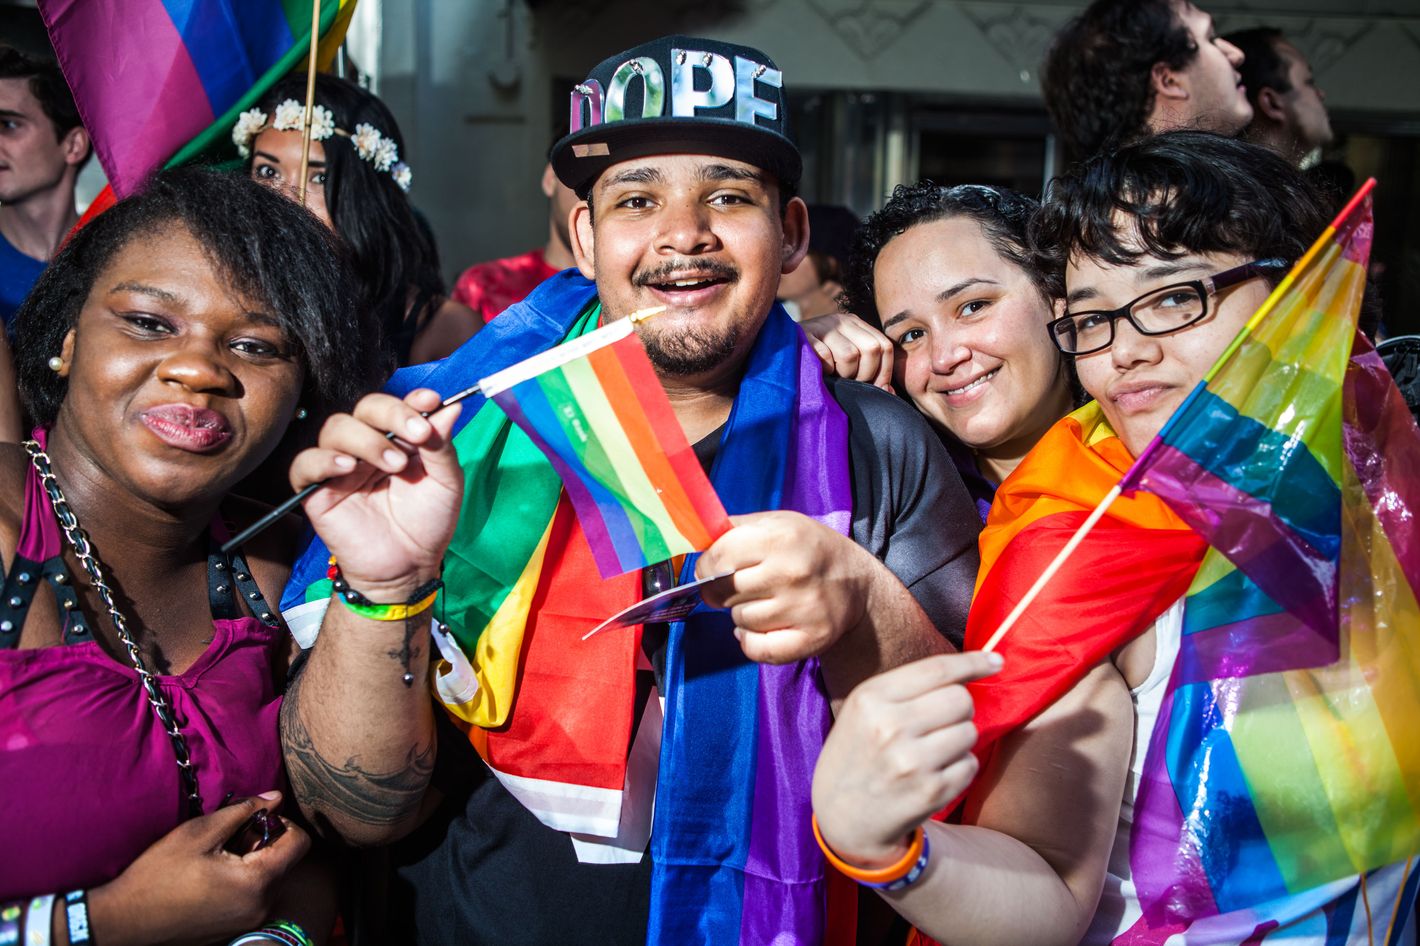 nyc gay pride events 2015